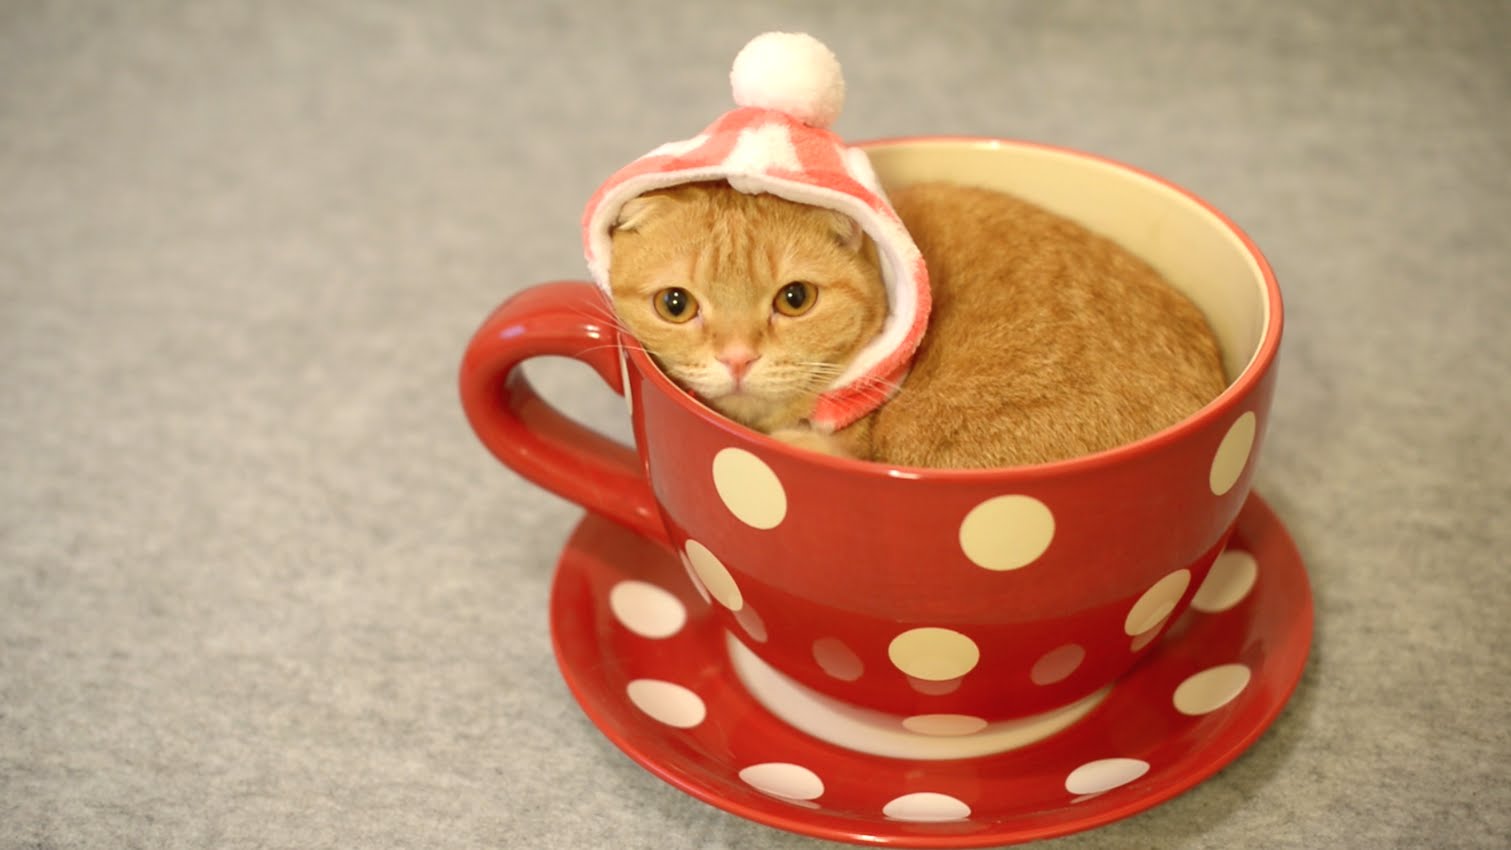 VIDEO: Kāpēc gan nepasēdēt tējas krūzē? (Cute Cat in Teacup)